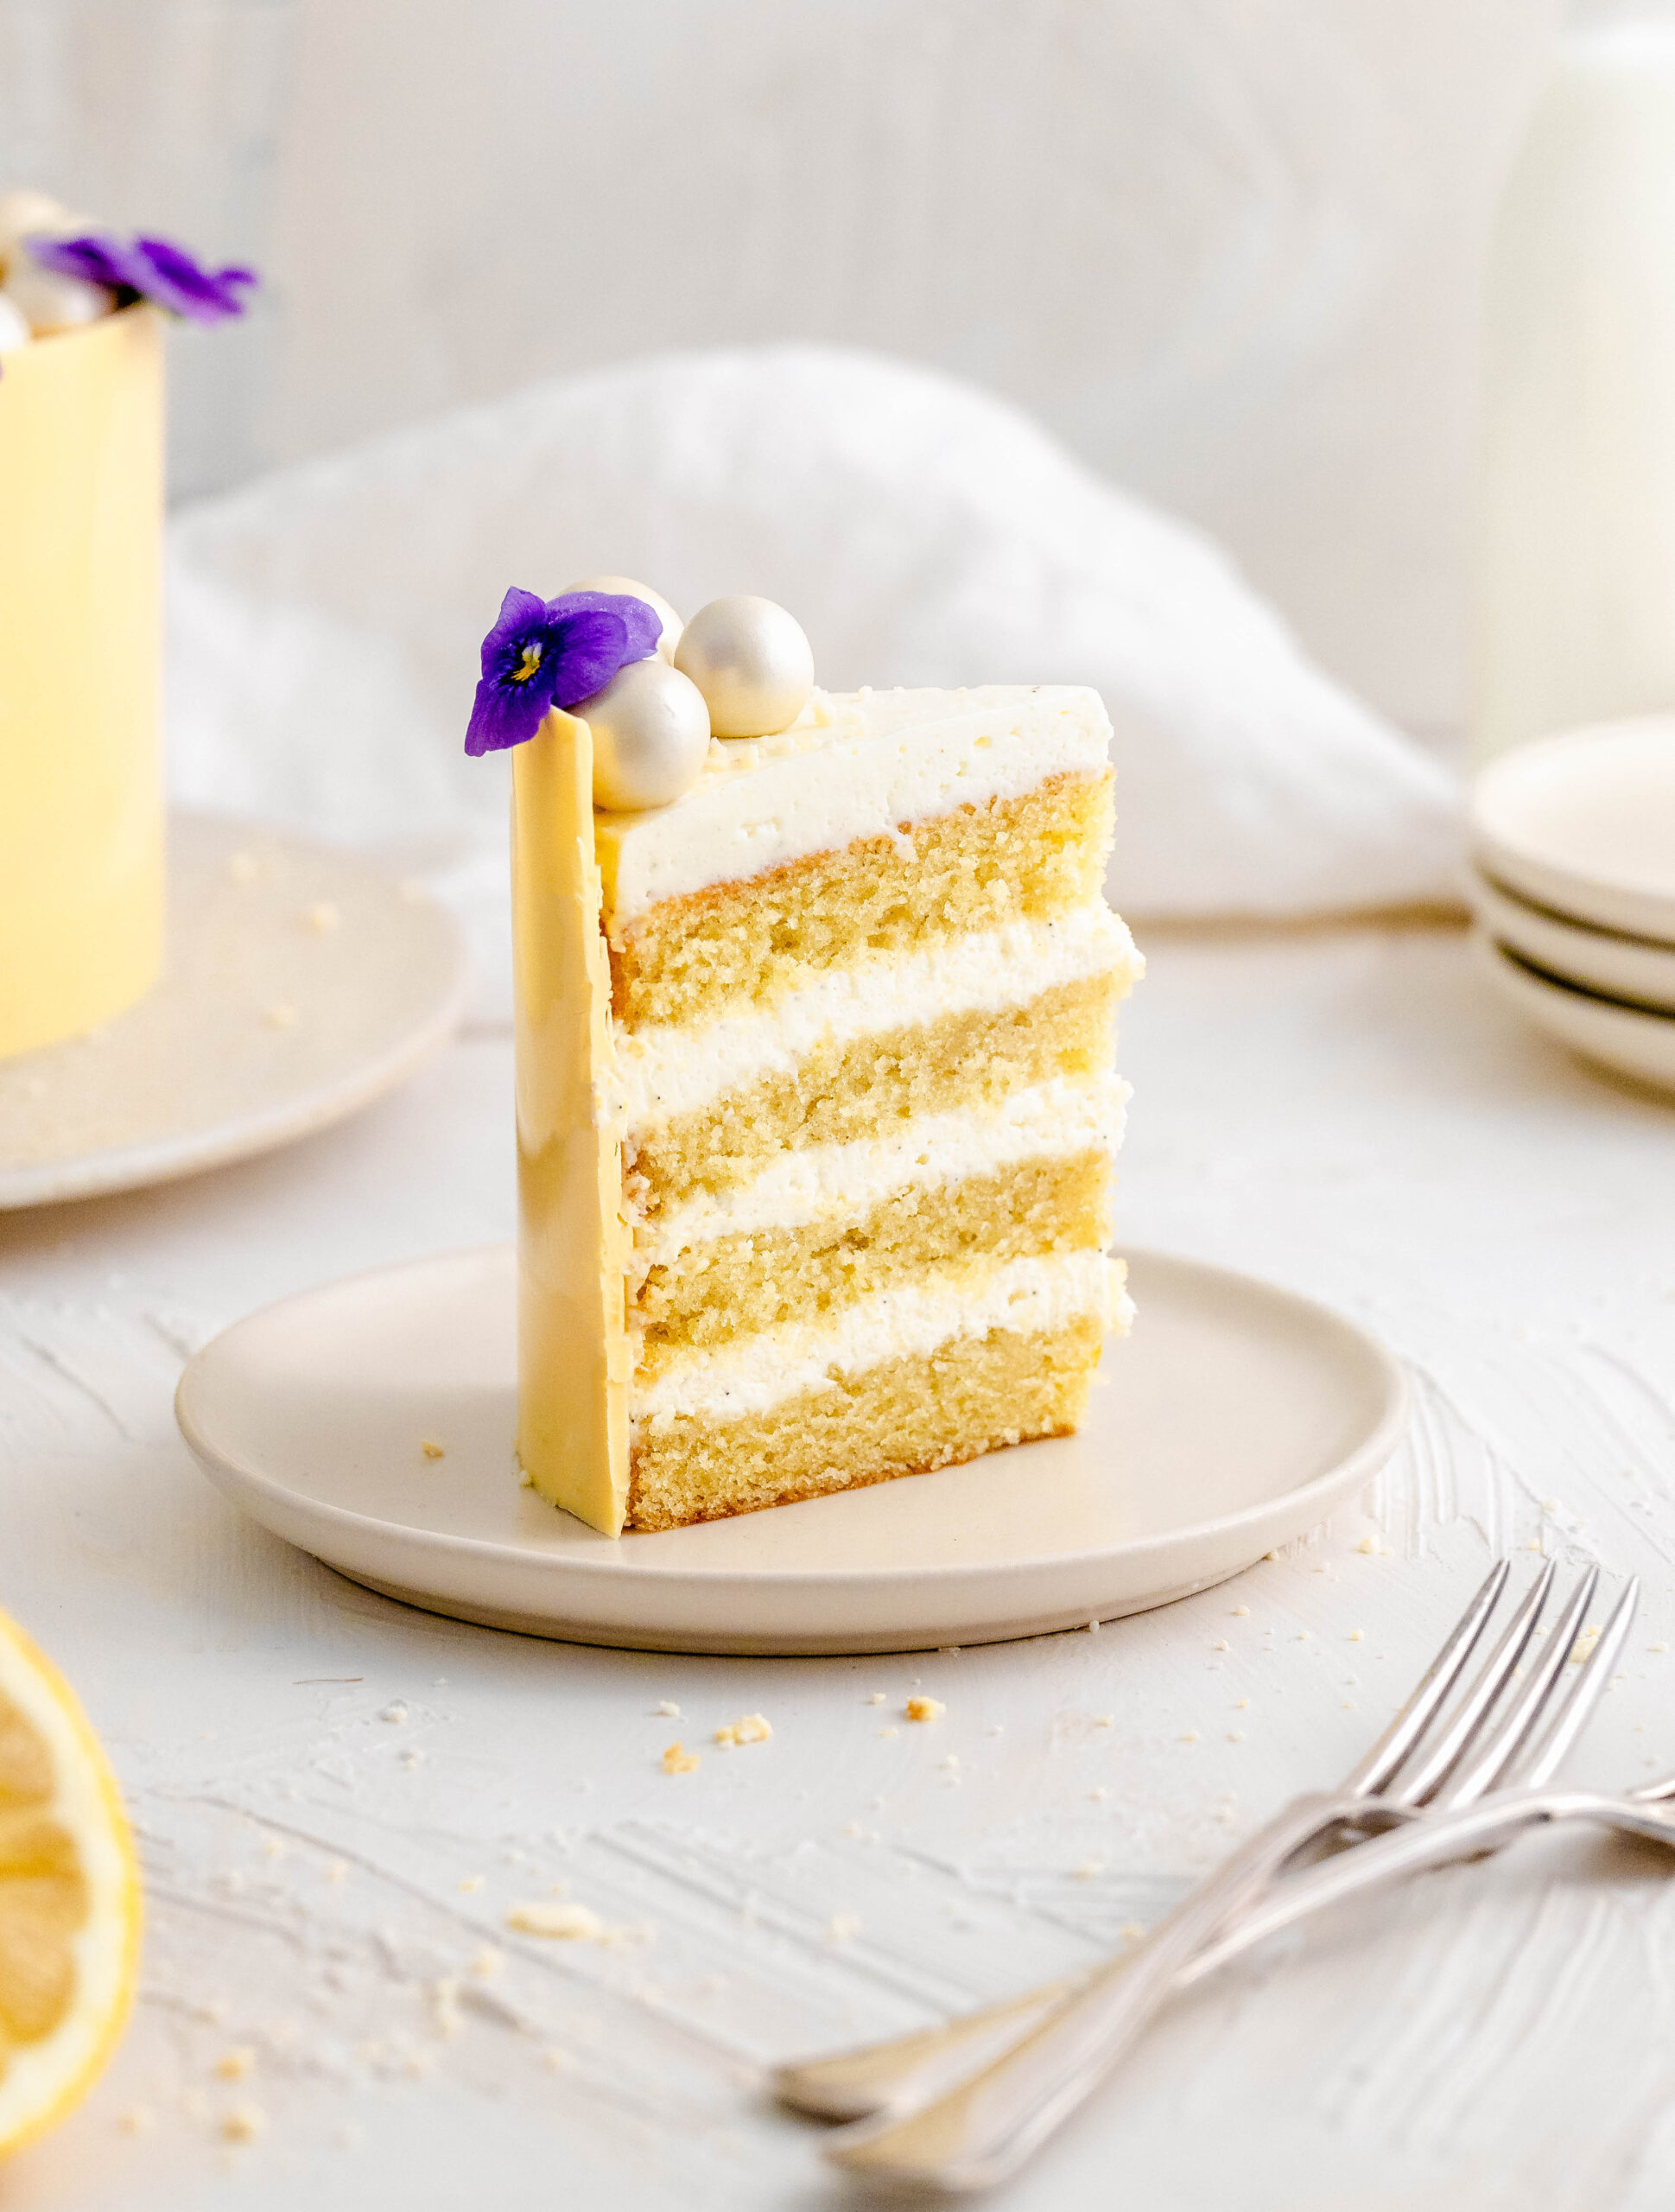 A slice of lemon and mascarpone cake on a plate.